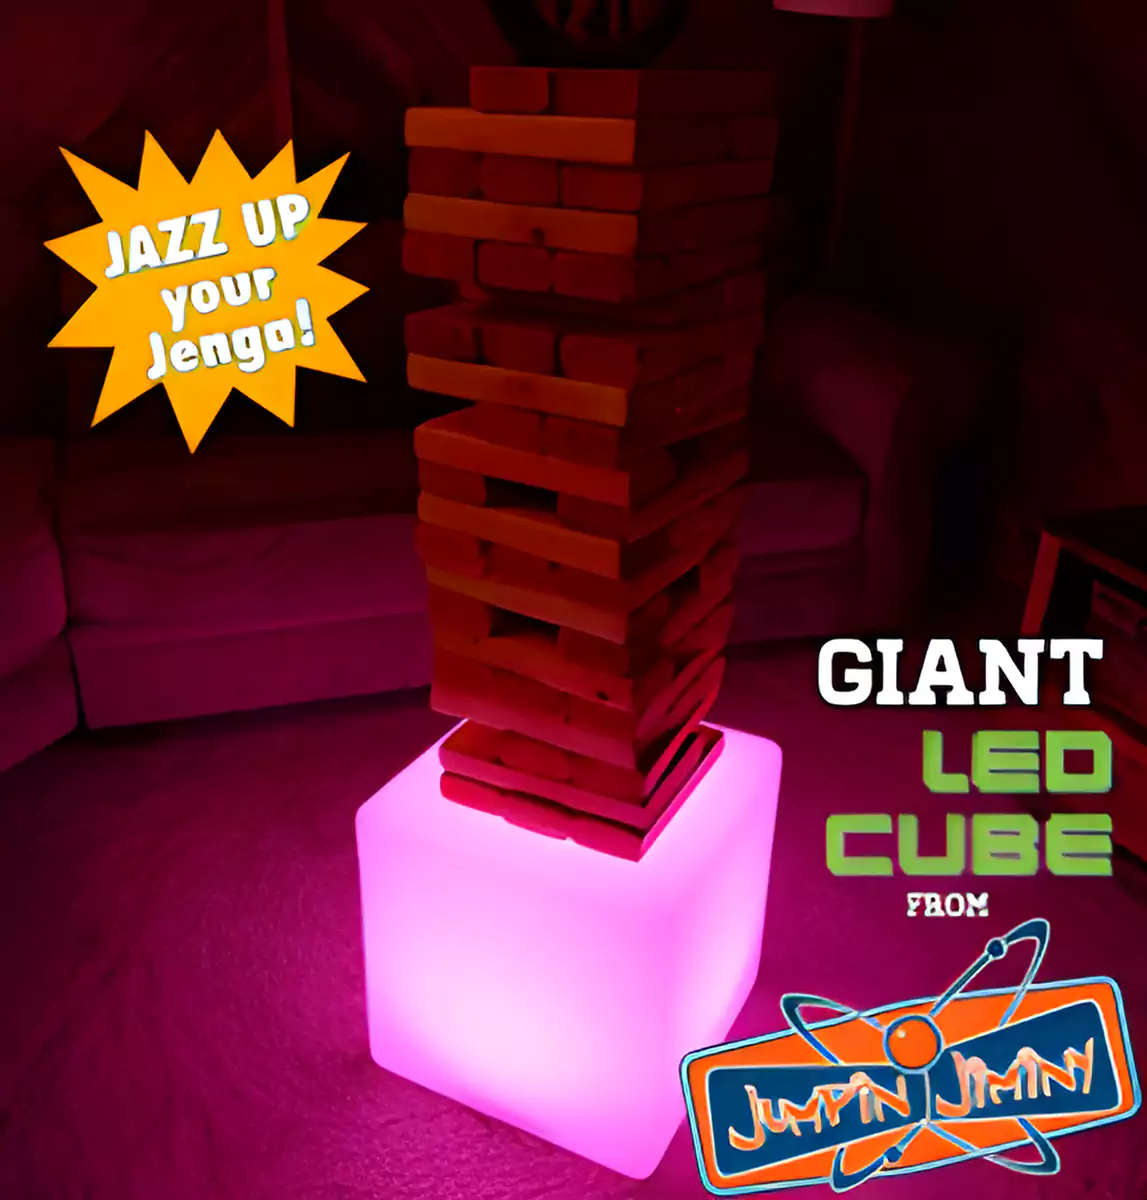 Giant LED Cube Promo Items